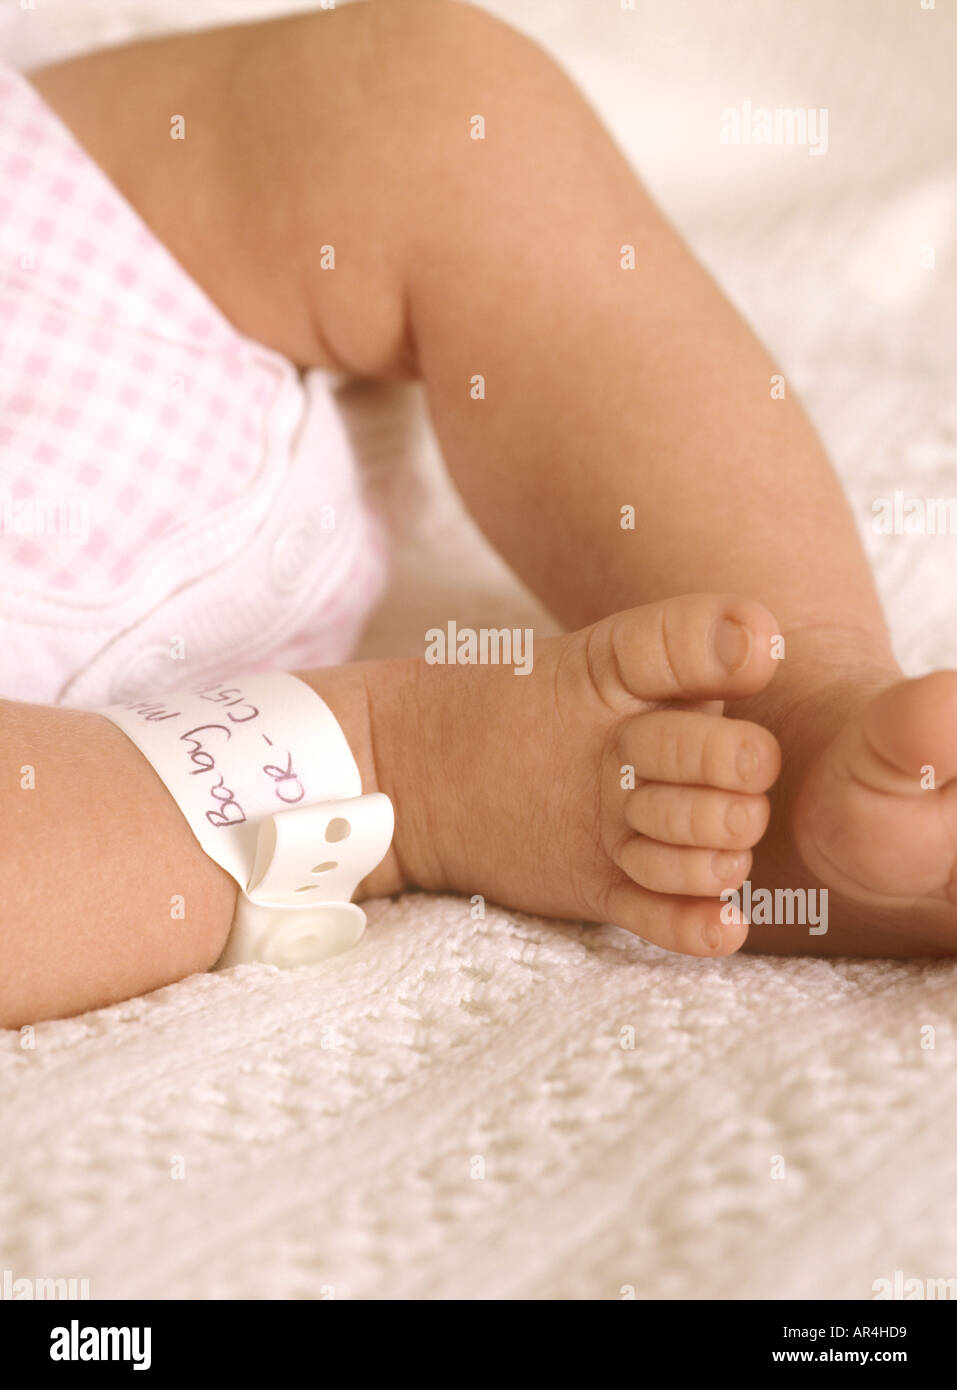 Gros plan sur les pieds et le bracelet d'identité de la jeune fille, petits orteils mignons, Royaume-Uni, Royaume-Uni Banque D'Images